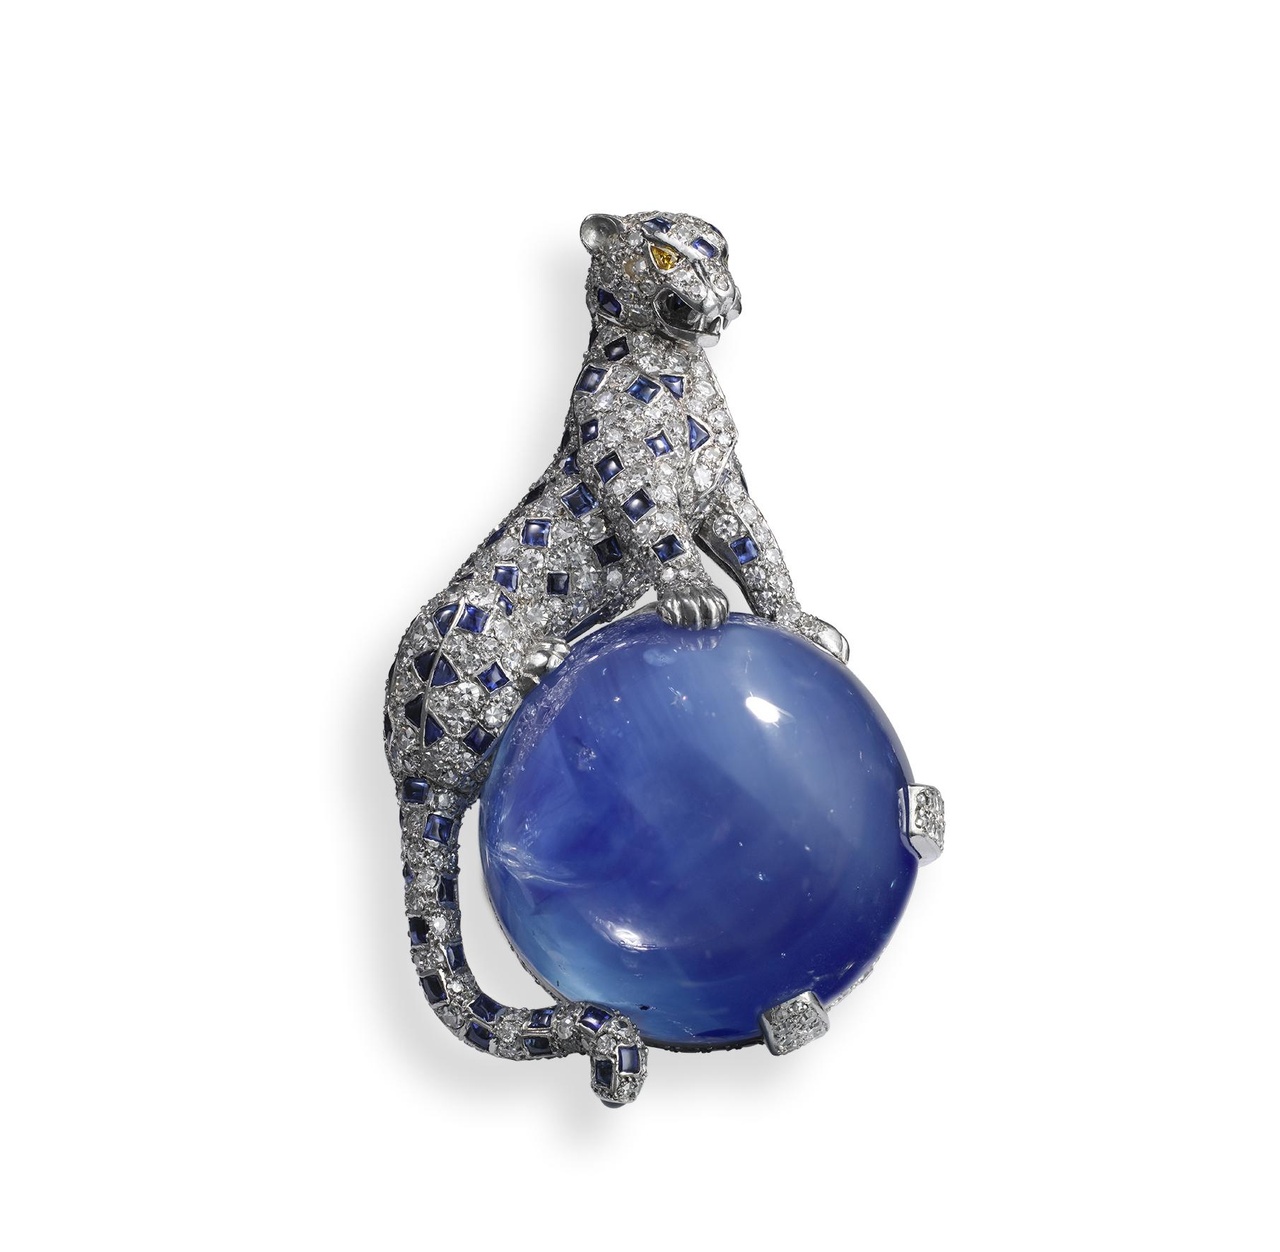 Panthère 胸針，卡地亞巴黎，1949年。鉑金，金，鑽石，藍寶石，其中一顆藍寶石來自喀什米